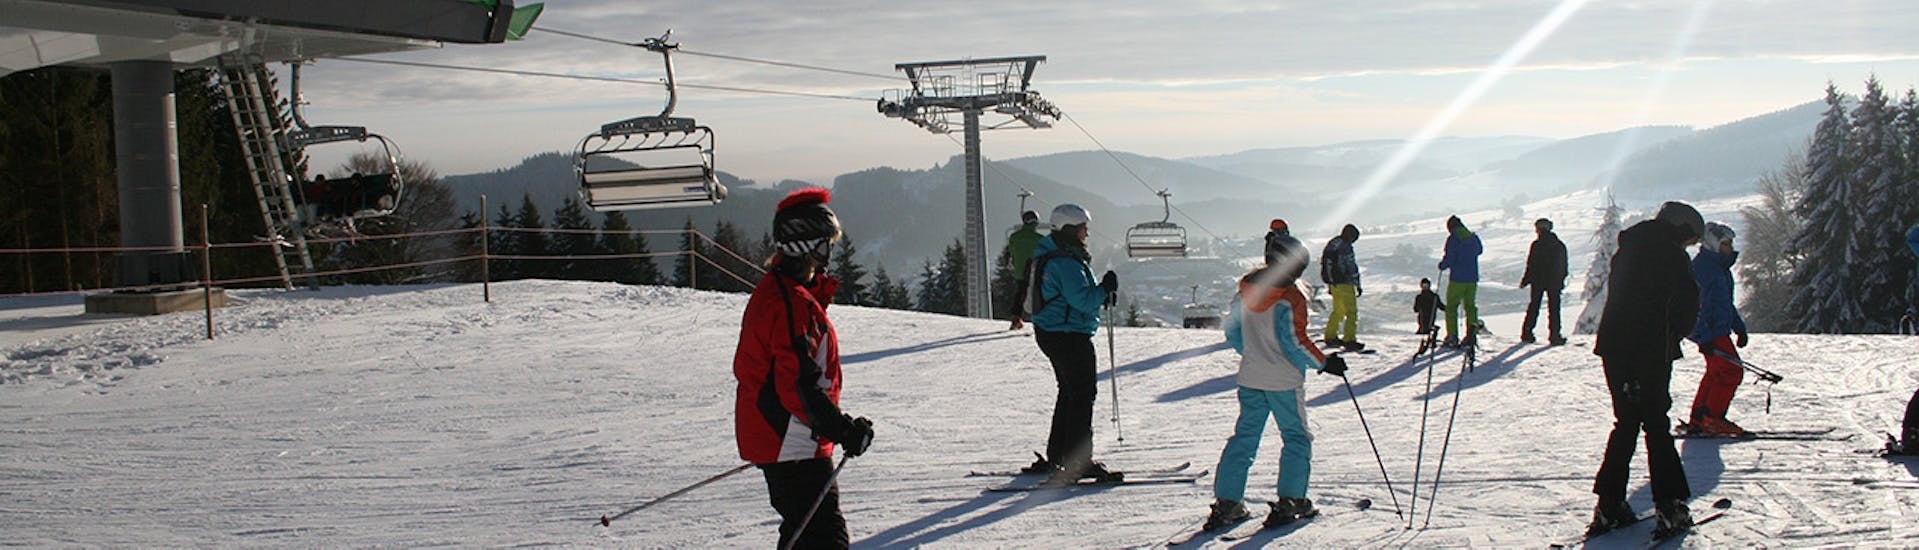 Lezioni di sci per bambini a partire da 11 anni per principianti.